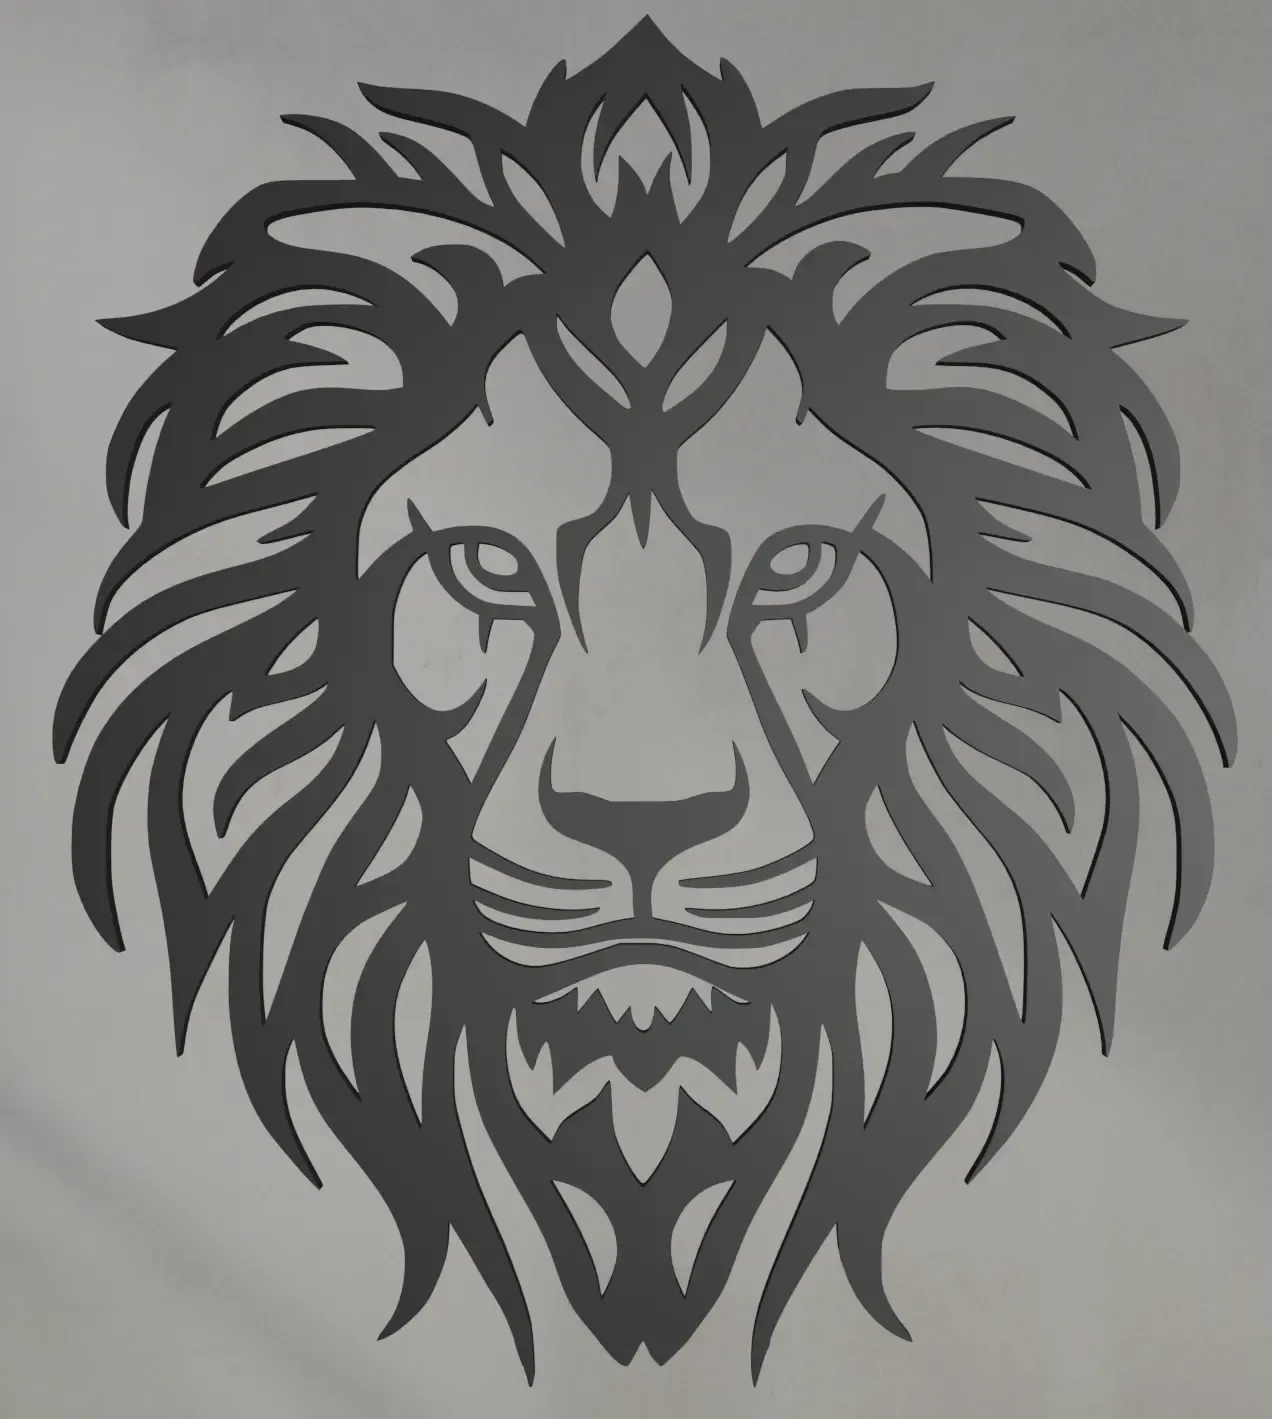 Lion Wall Art